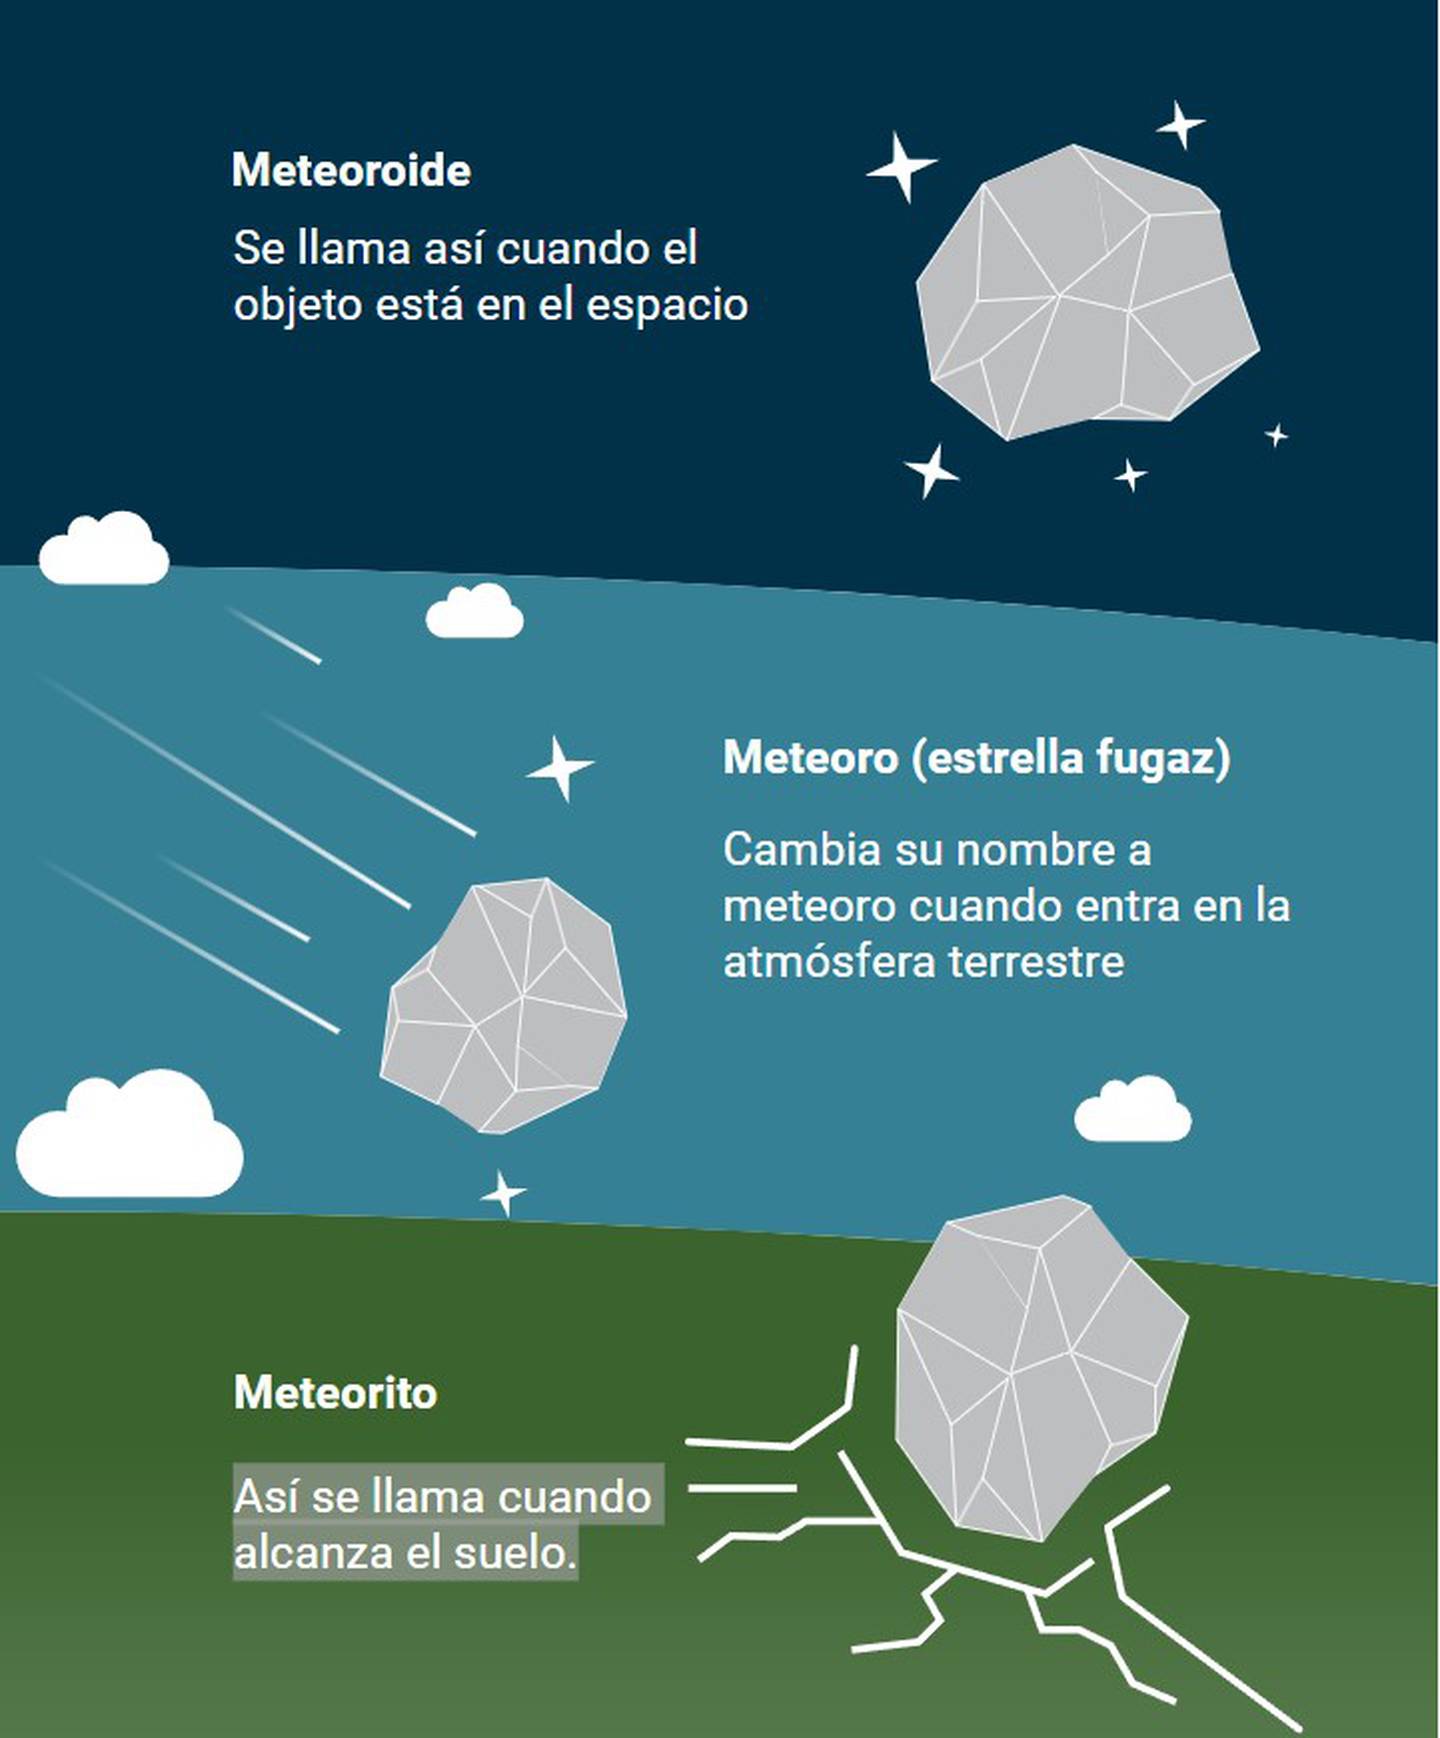 Estas son las diferencias entre meteoroide, meteoro y meteorito.